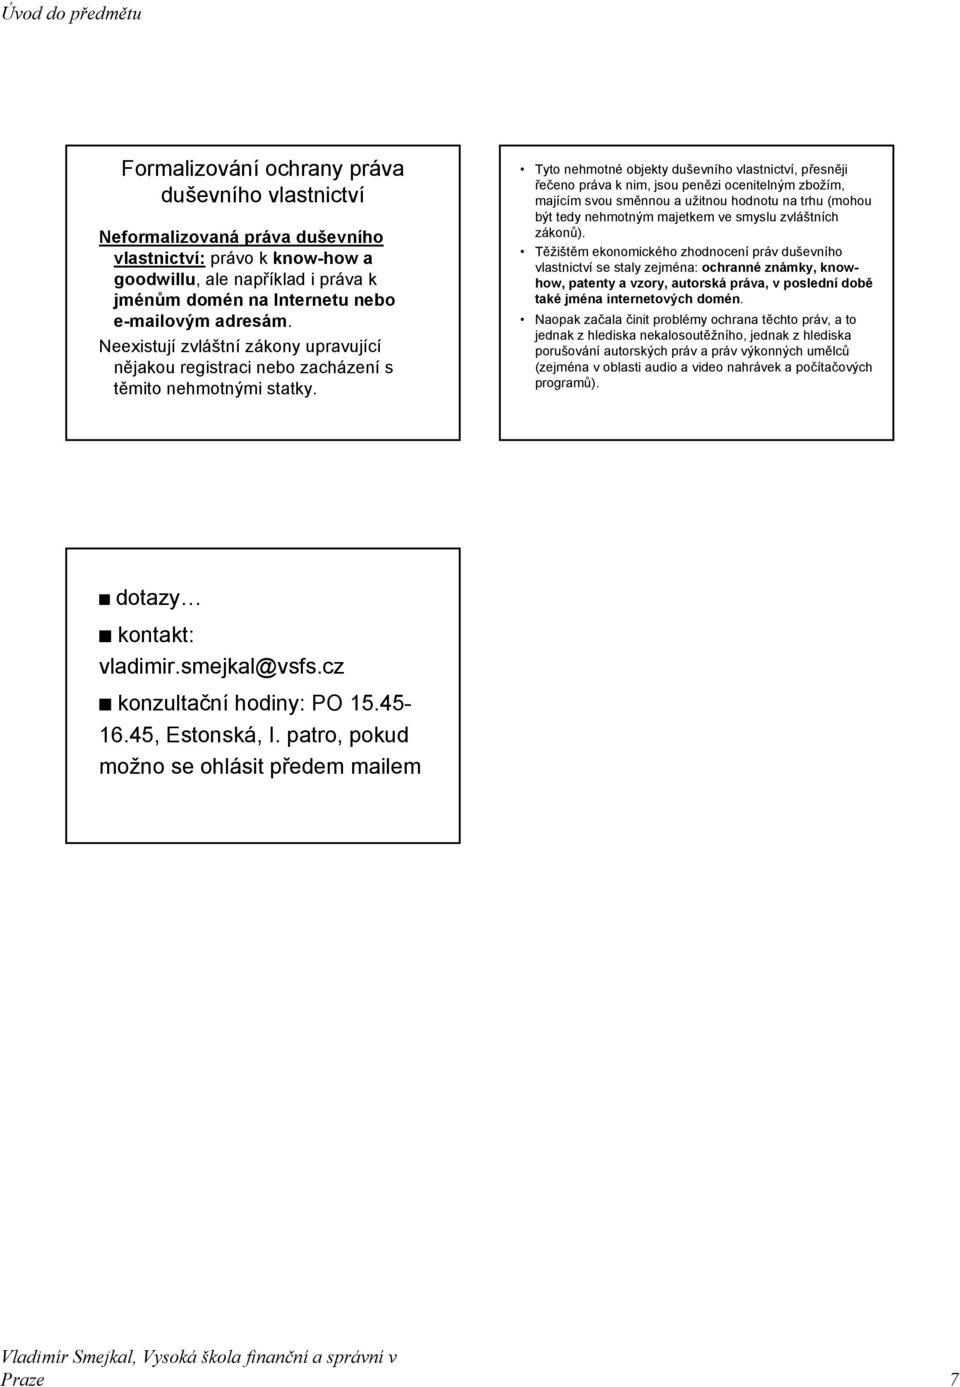 Právo duševního vlastnictví - PDF Stažení zdarma